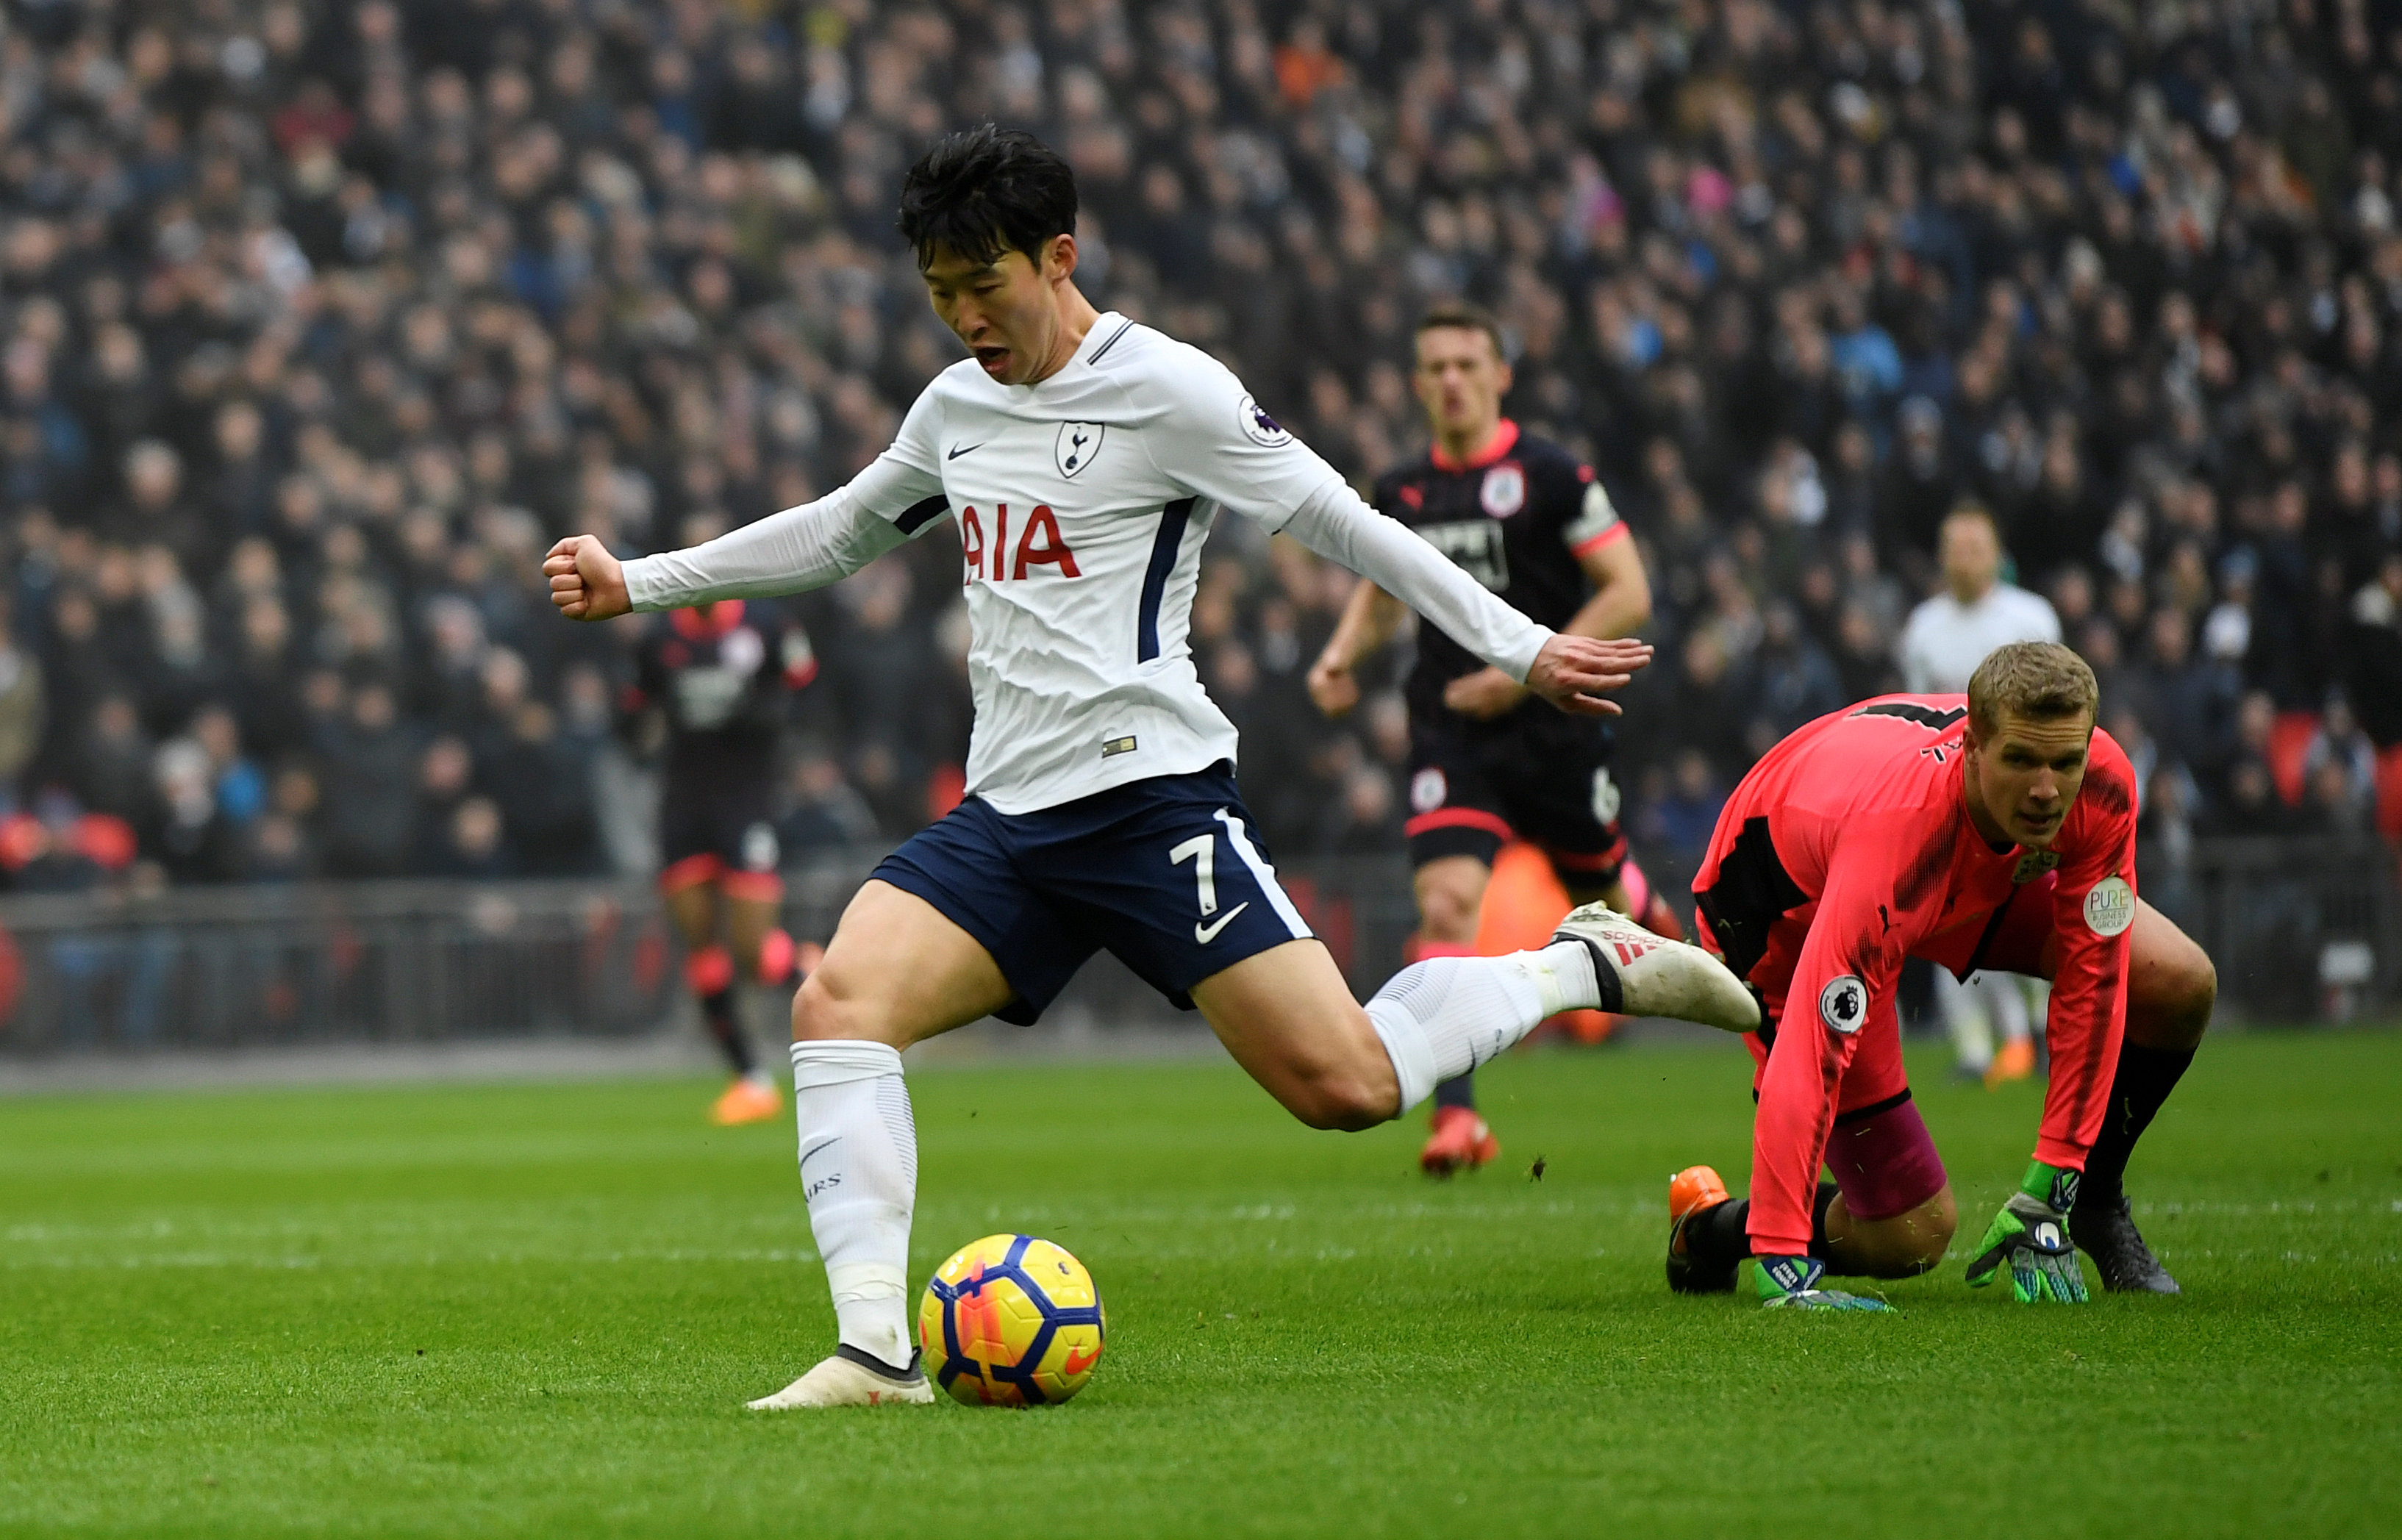 Pha dứt điểm mở tỉ số cho Tottenham của Son Heung-Min. Ảnh: REUTERS